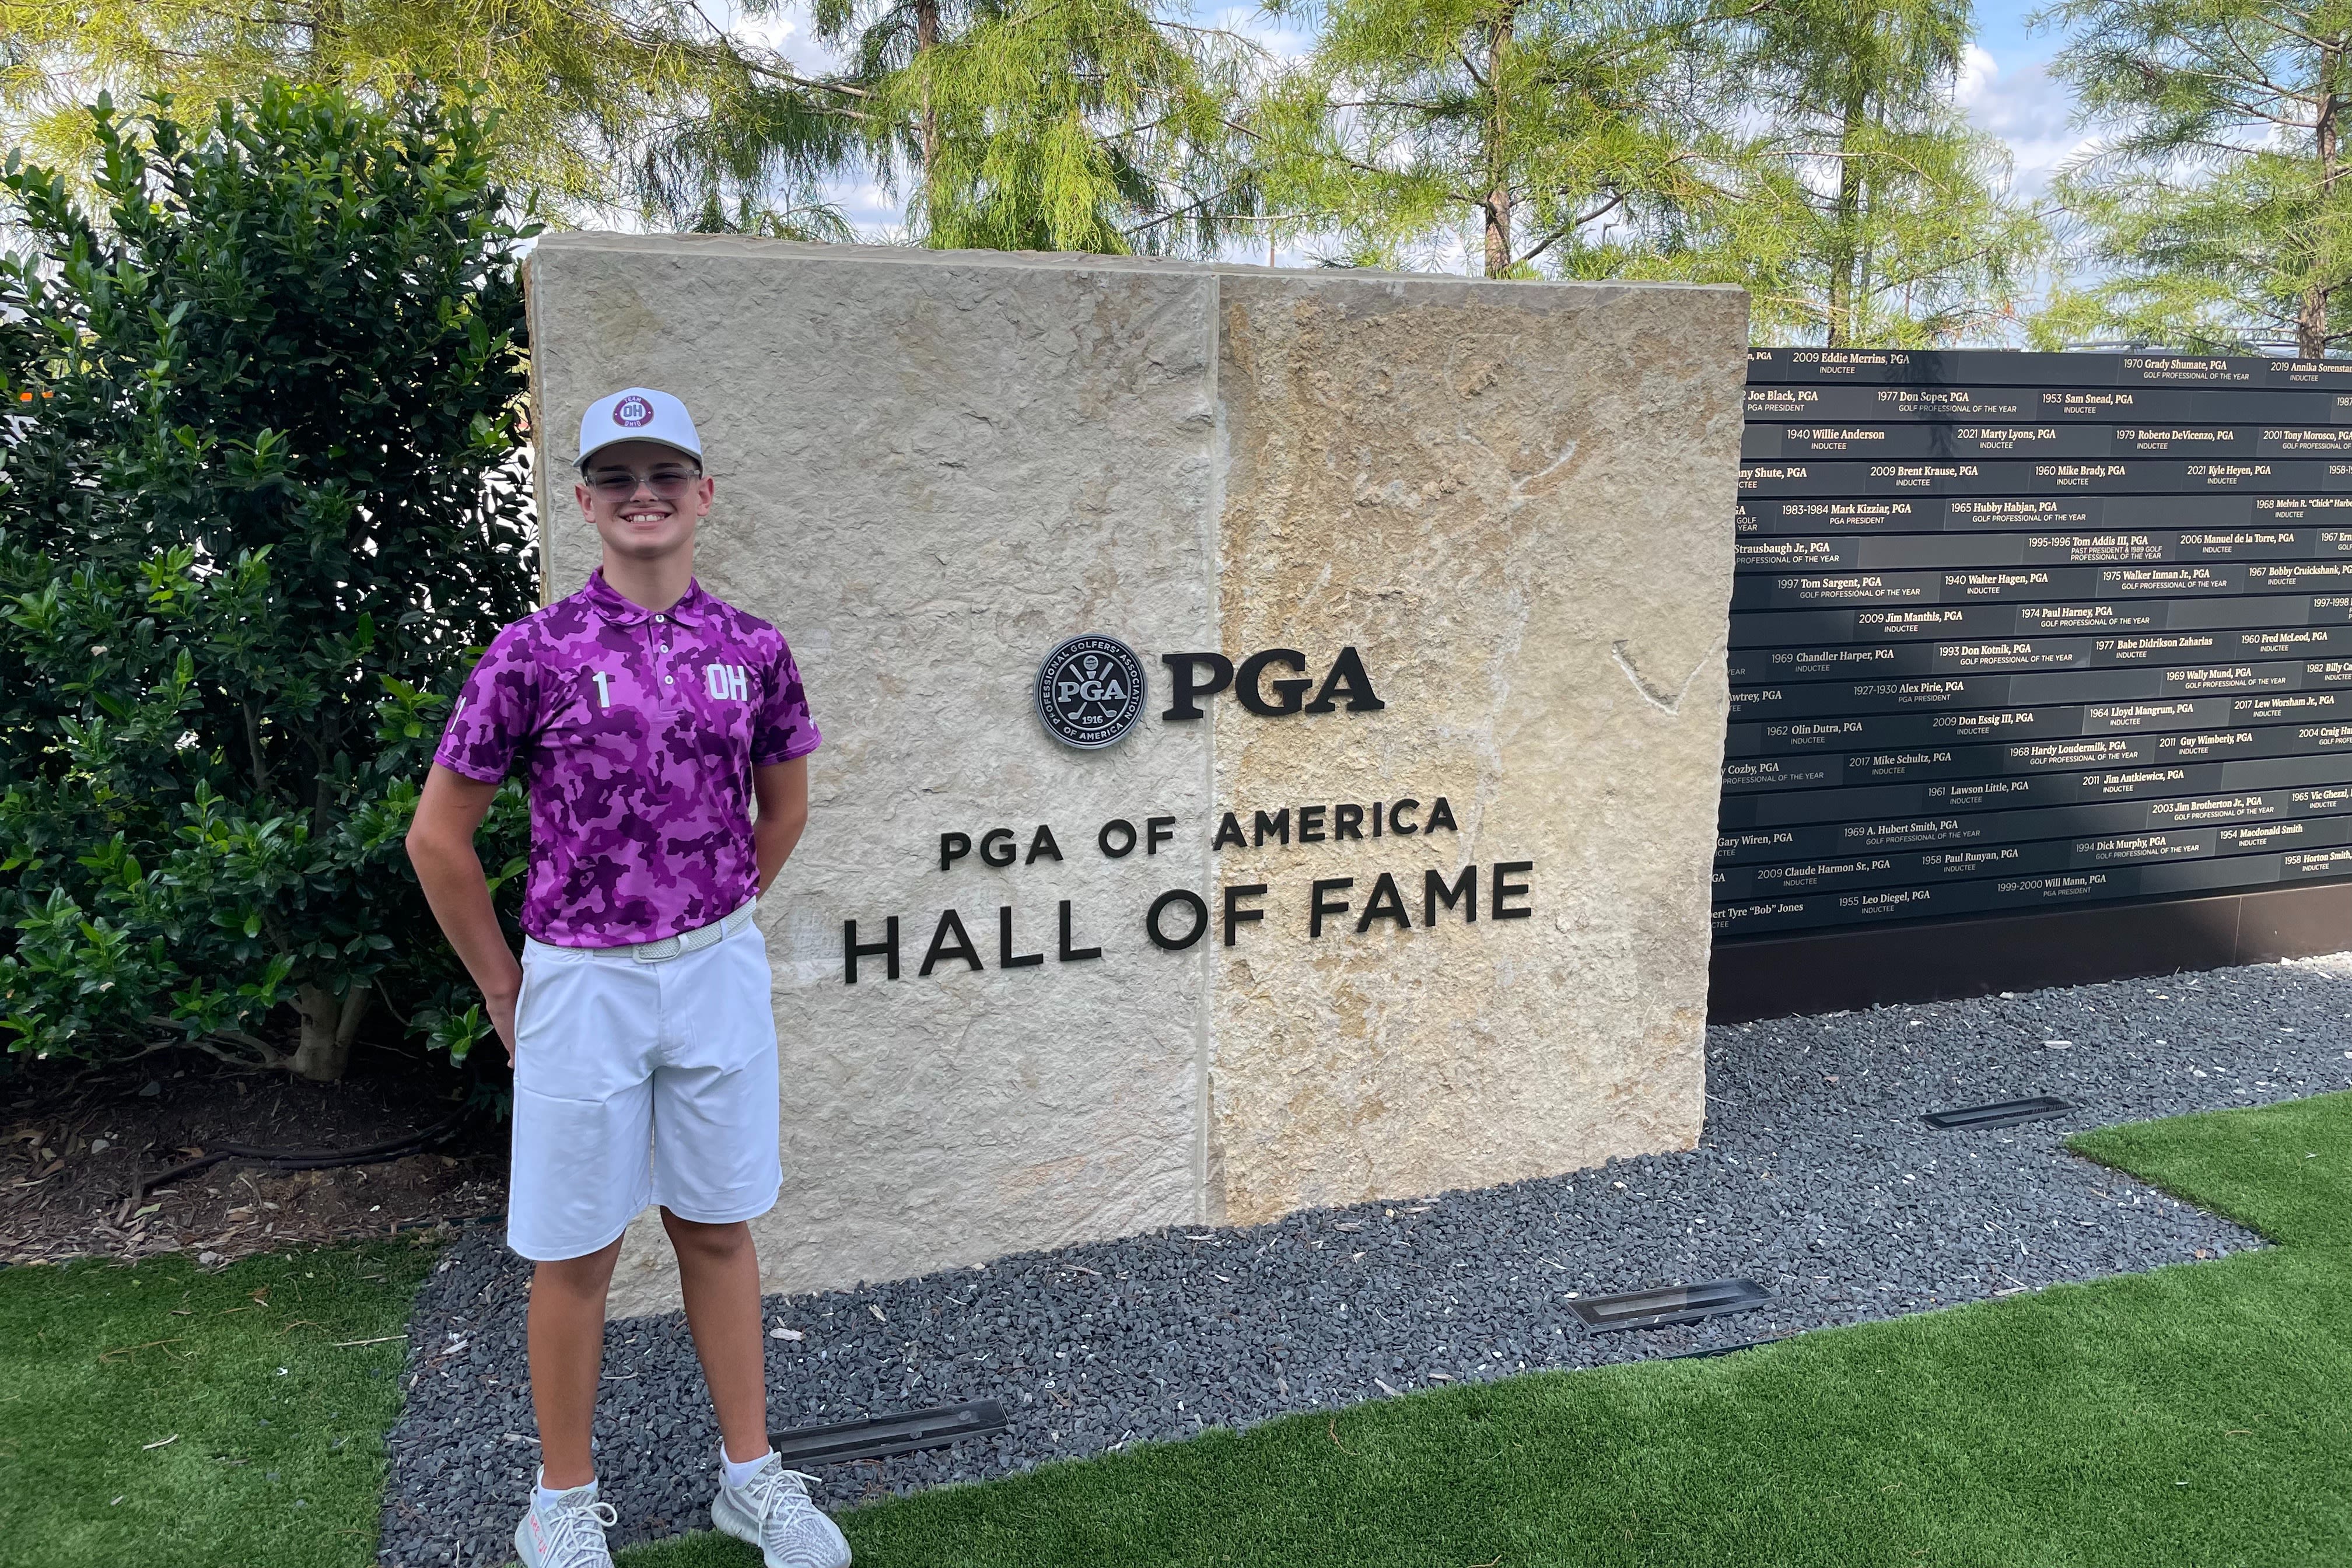 Peters di Taman Hall of Fame PGA Amerika.